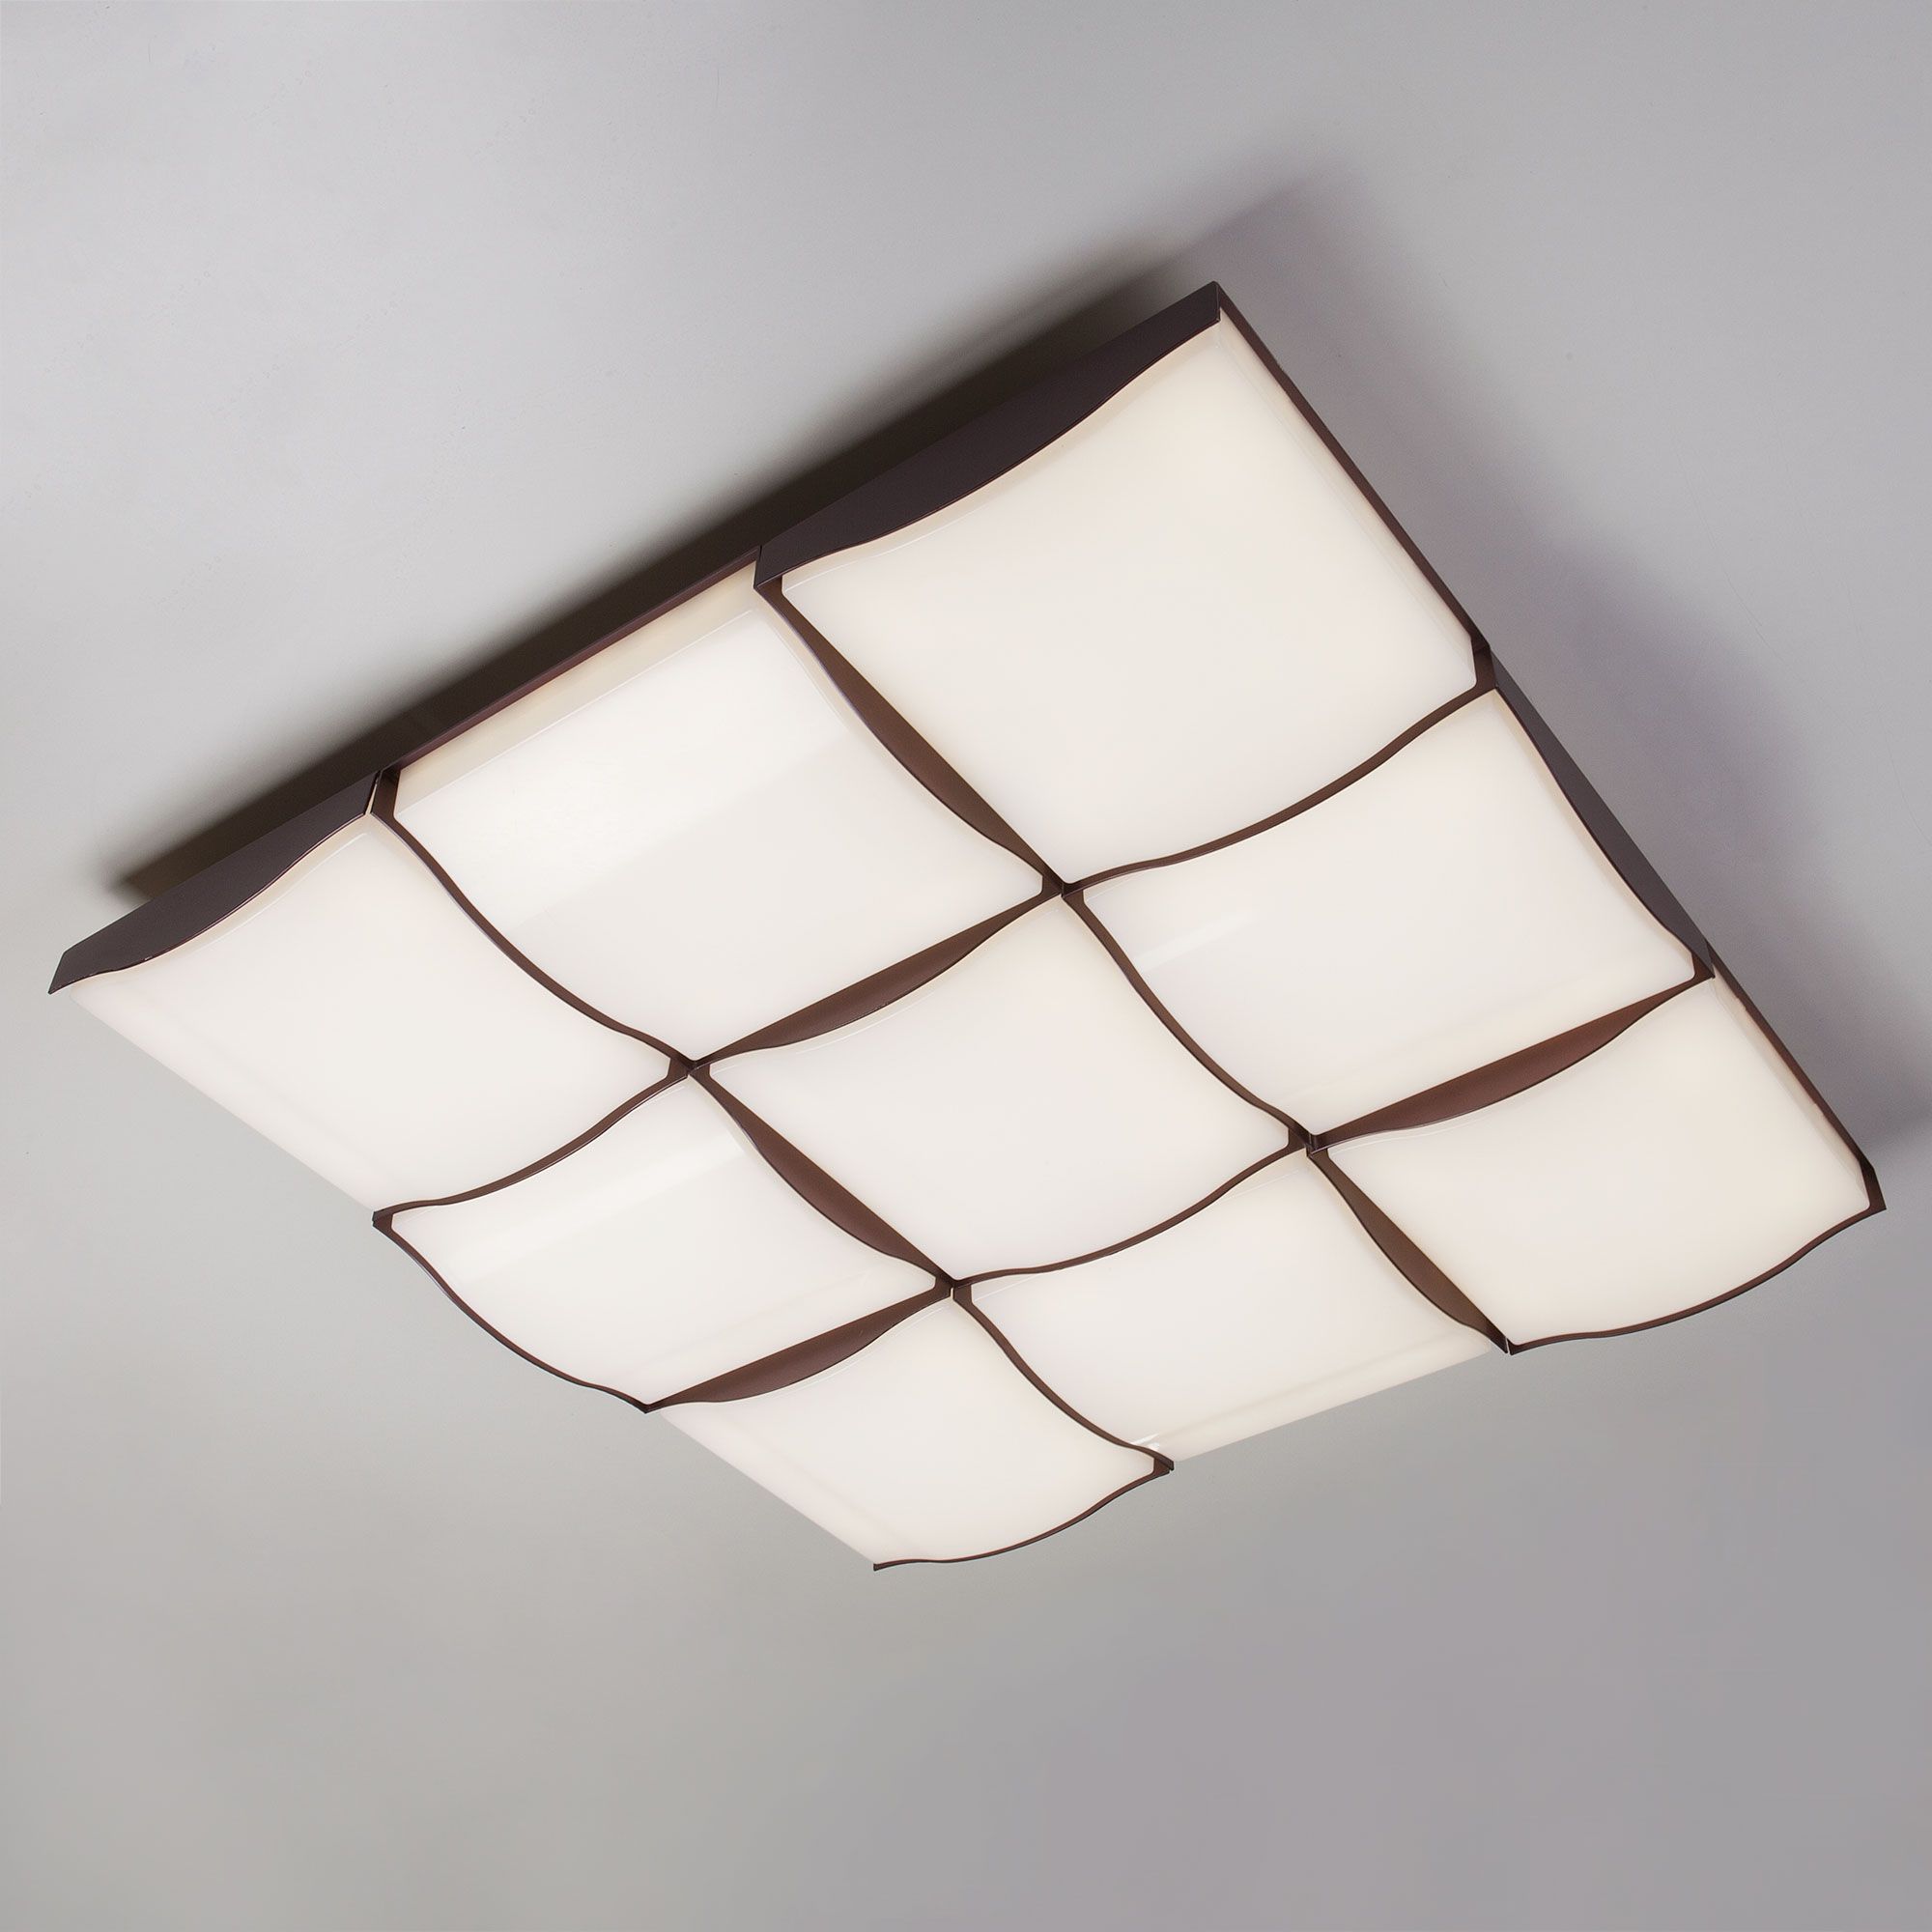 Светодиодный потолочный светильник Eurosvet Relief 90031/9 / потолочный светильник кофе. Фото 1